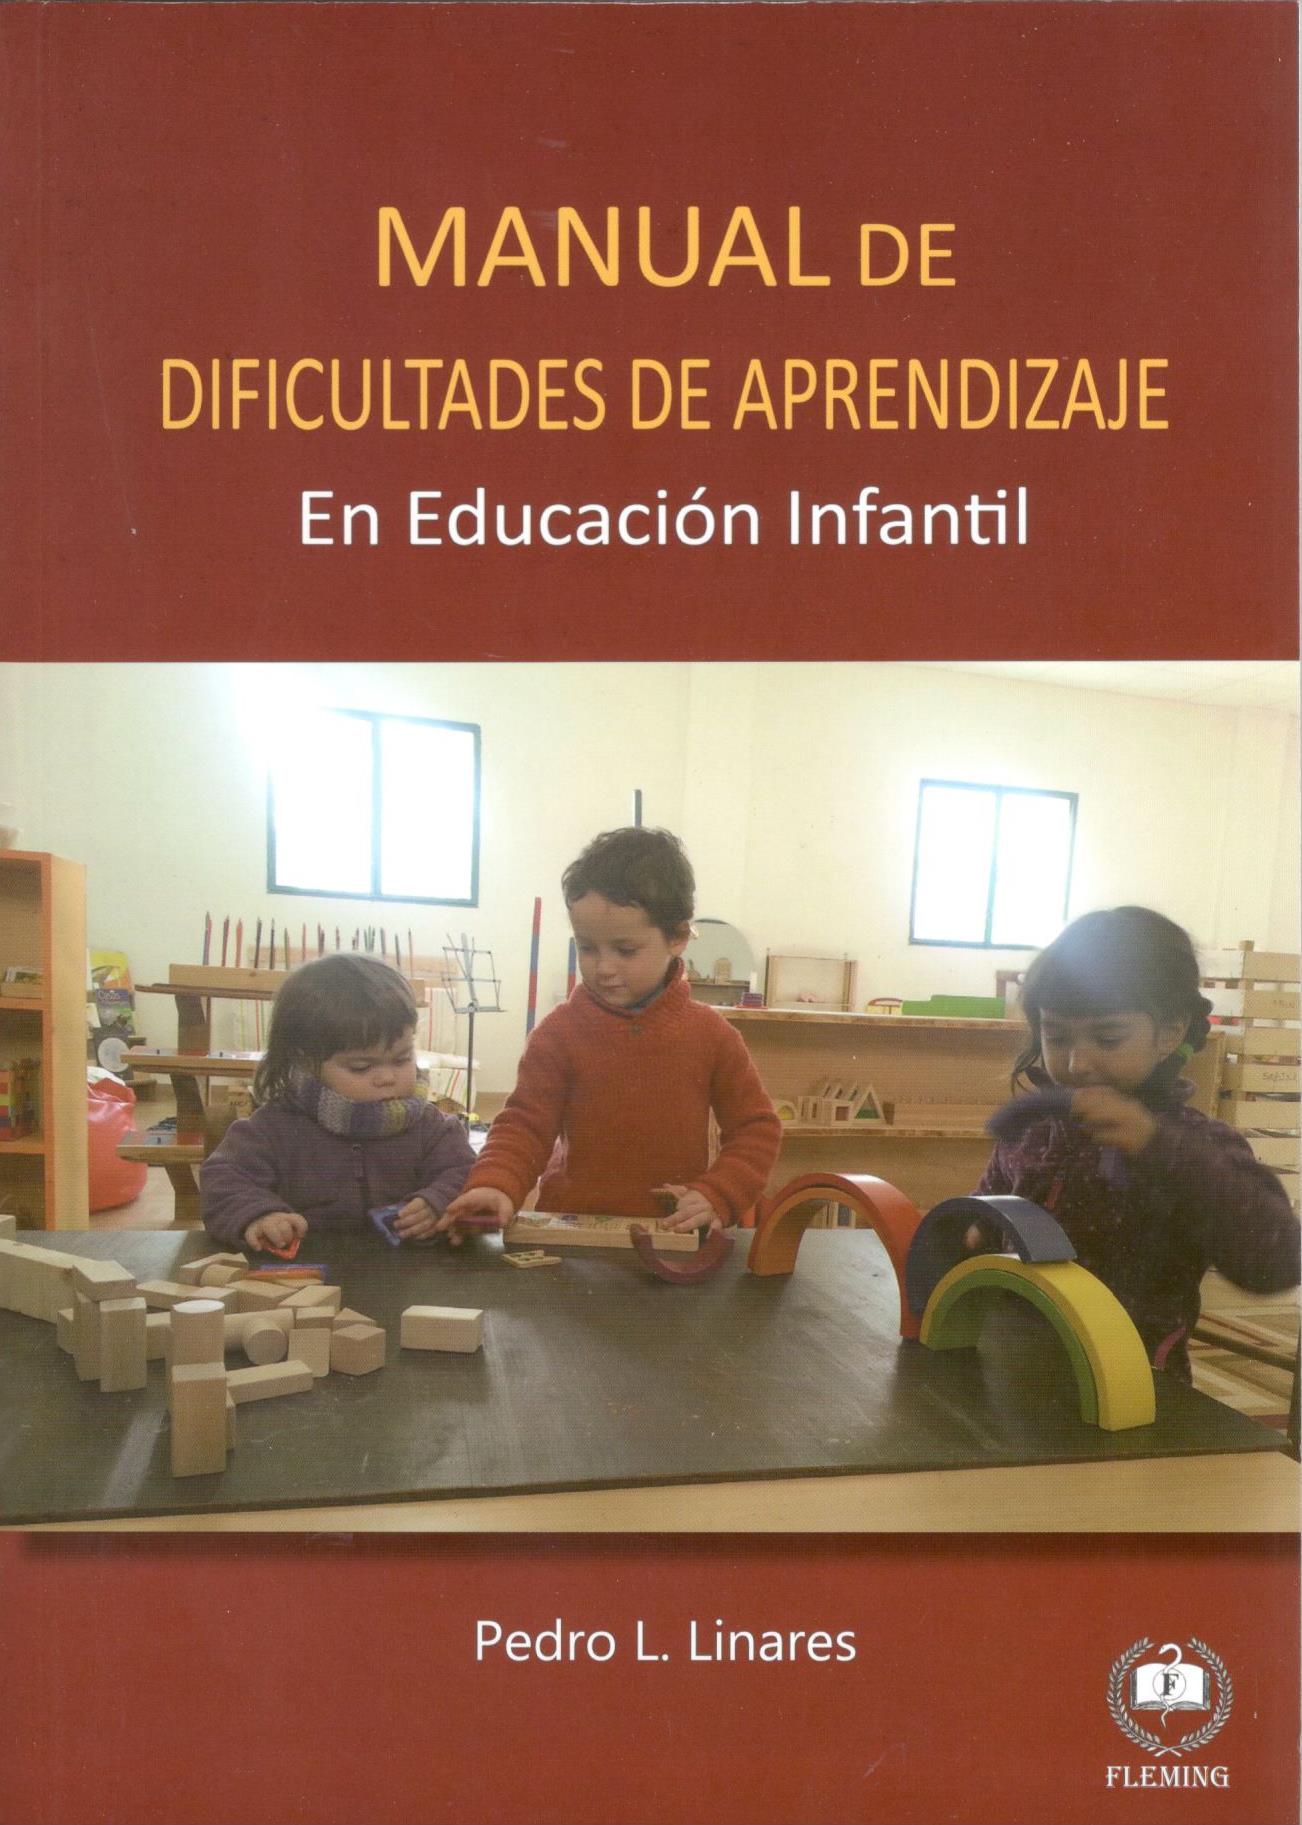 MANUAL DE DIFICULTADES DE APRENDIZAJE EN EDUCACION INFANTIL